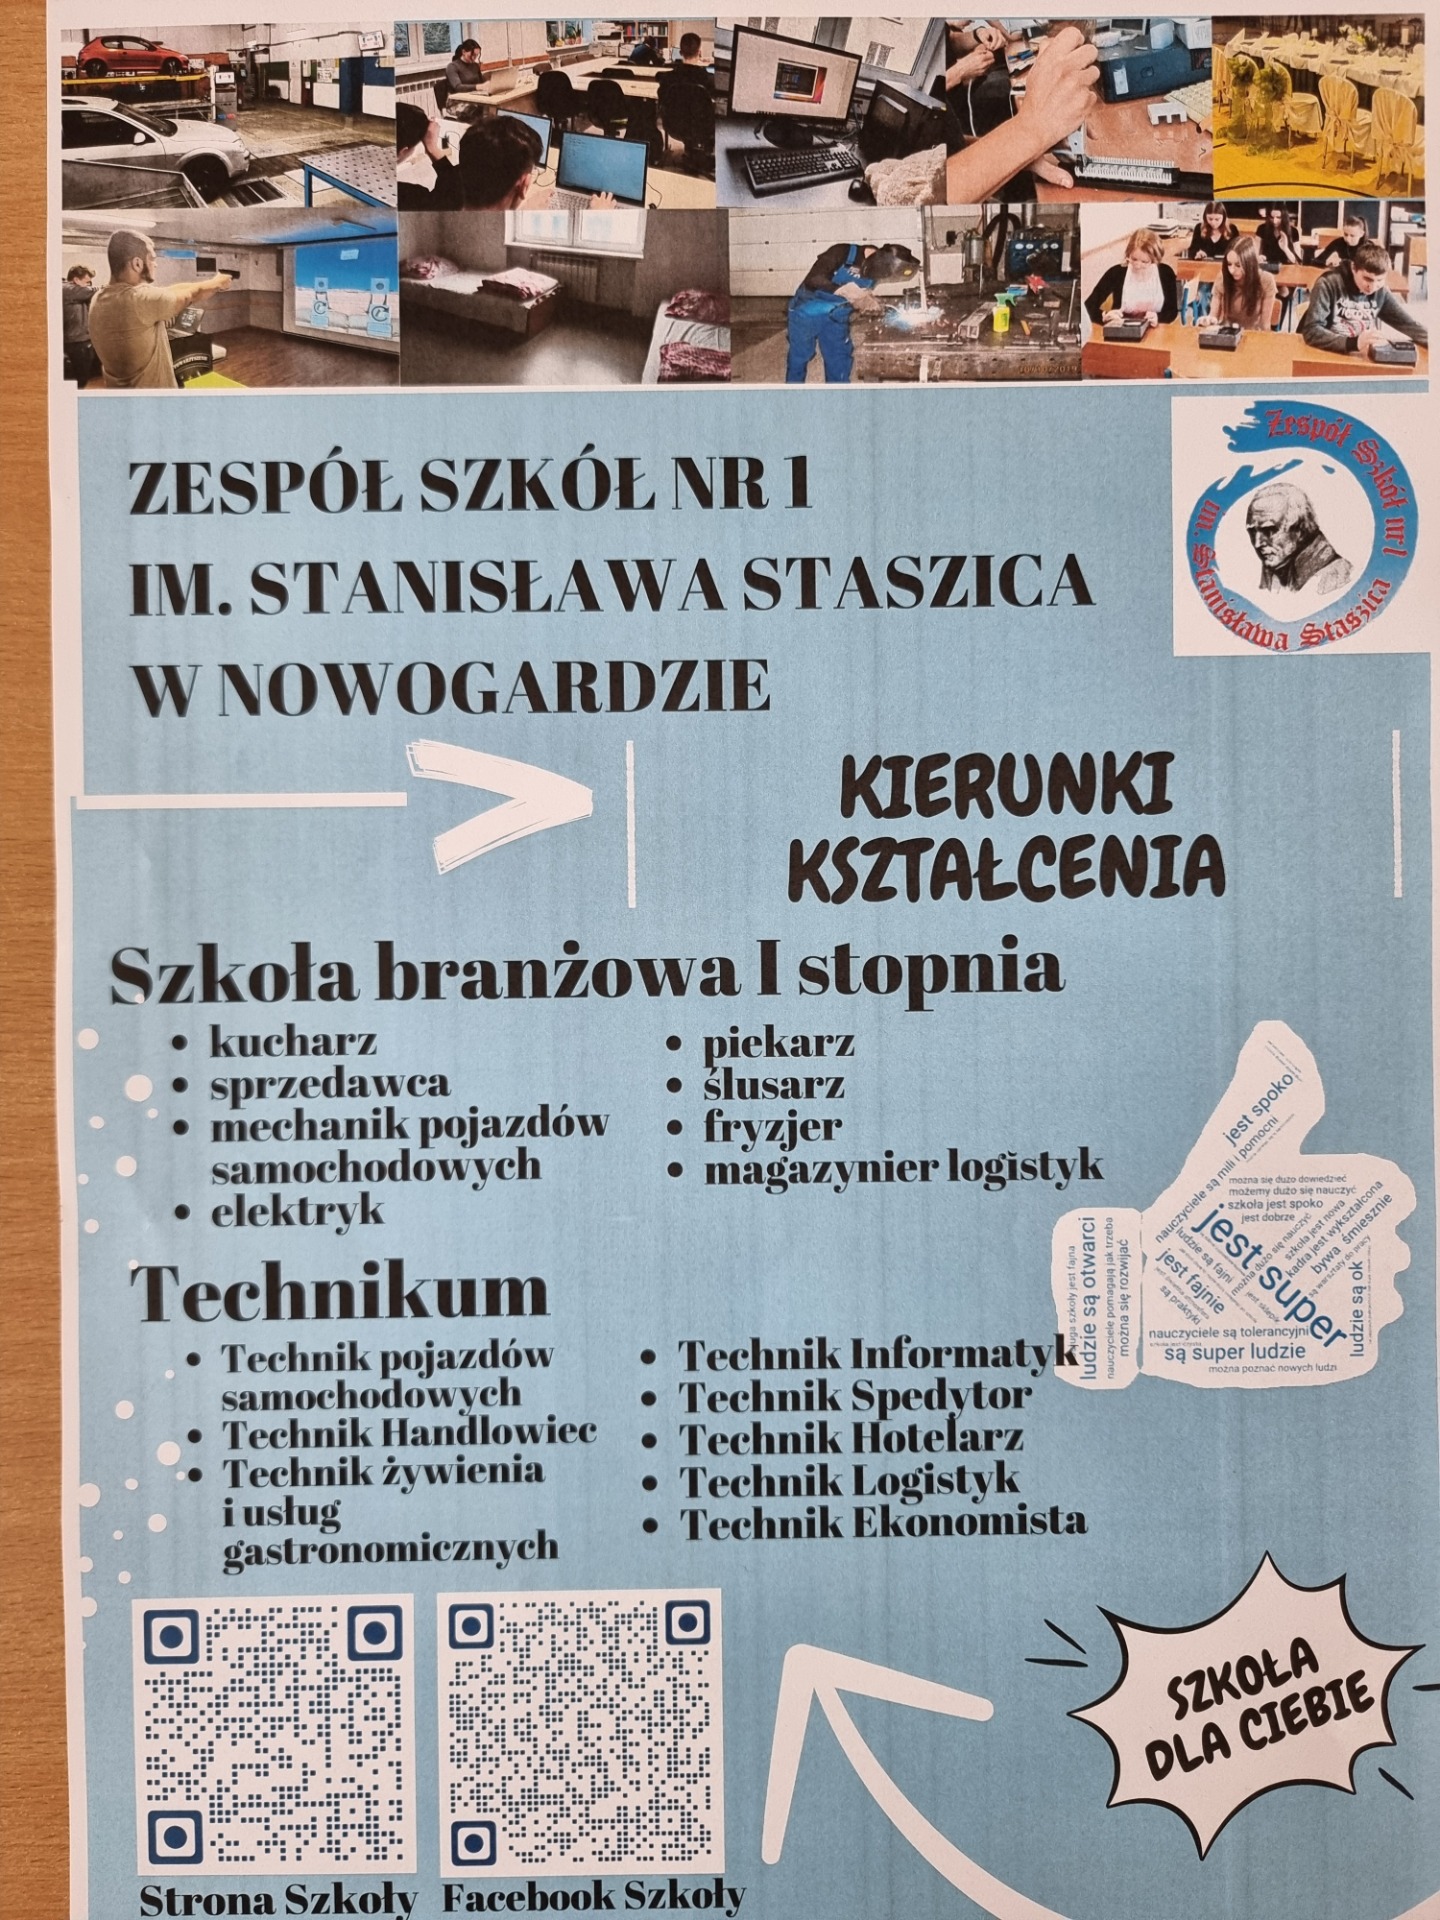 Spotkanie zawodoznawcze promujące Zespół Szkół Nr 1 im. Stanisława Staszica w Nowogardzie - Obrazek 1